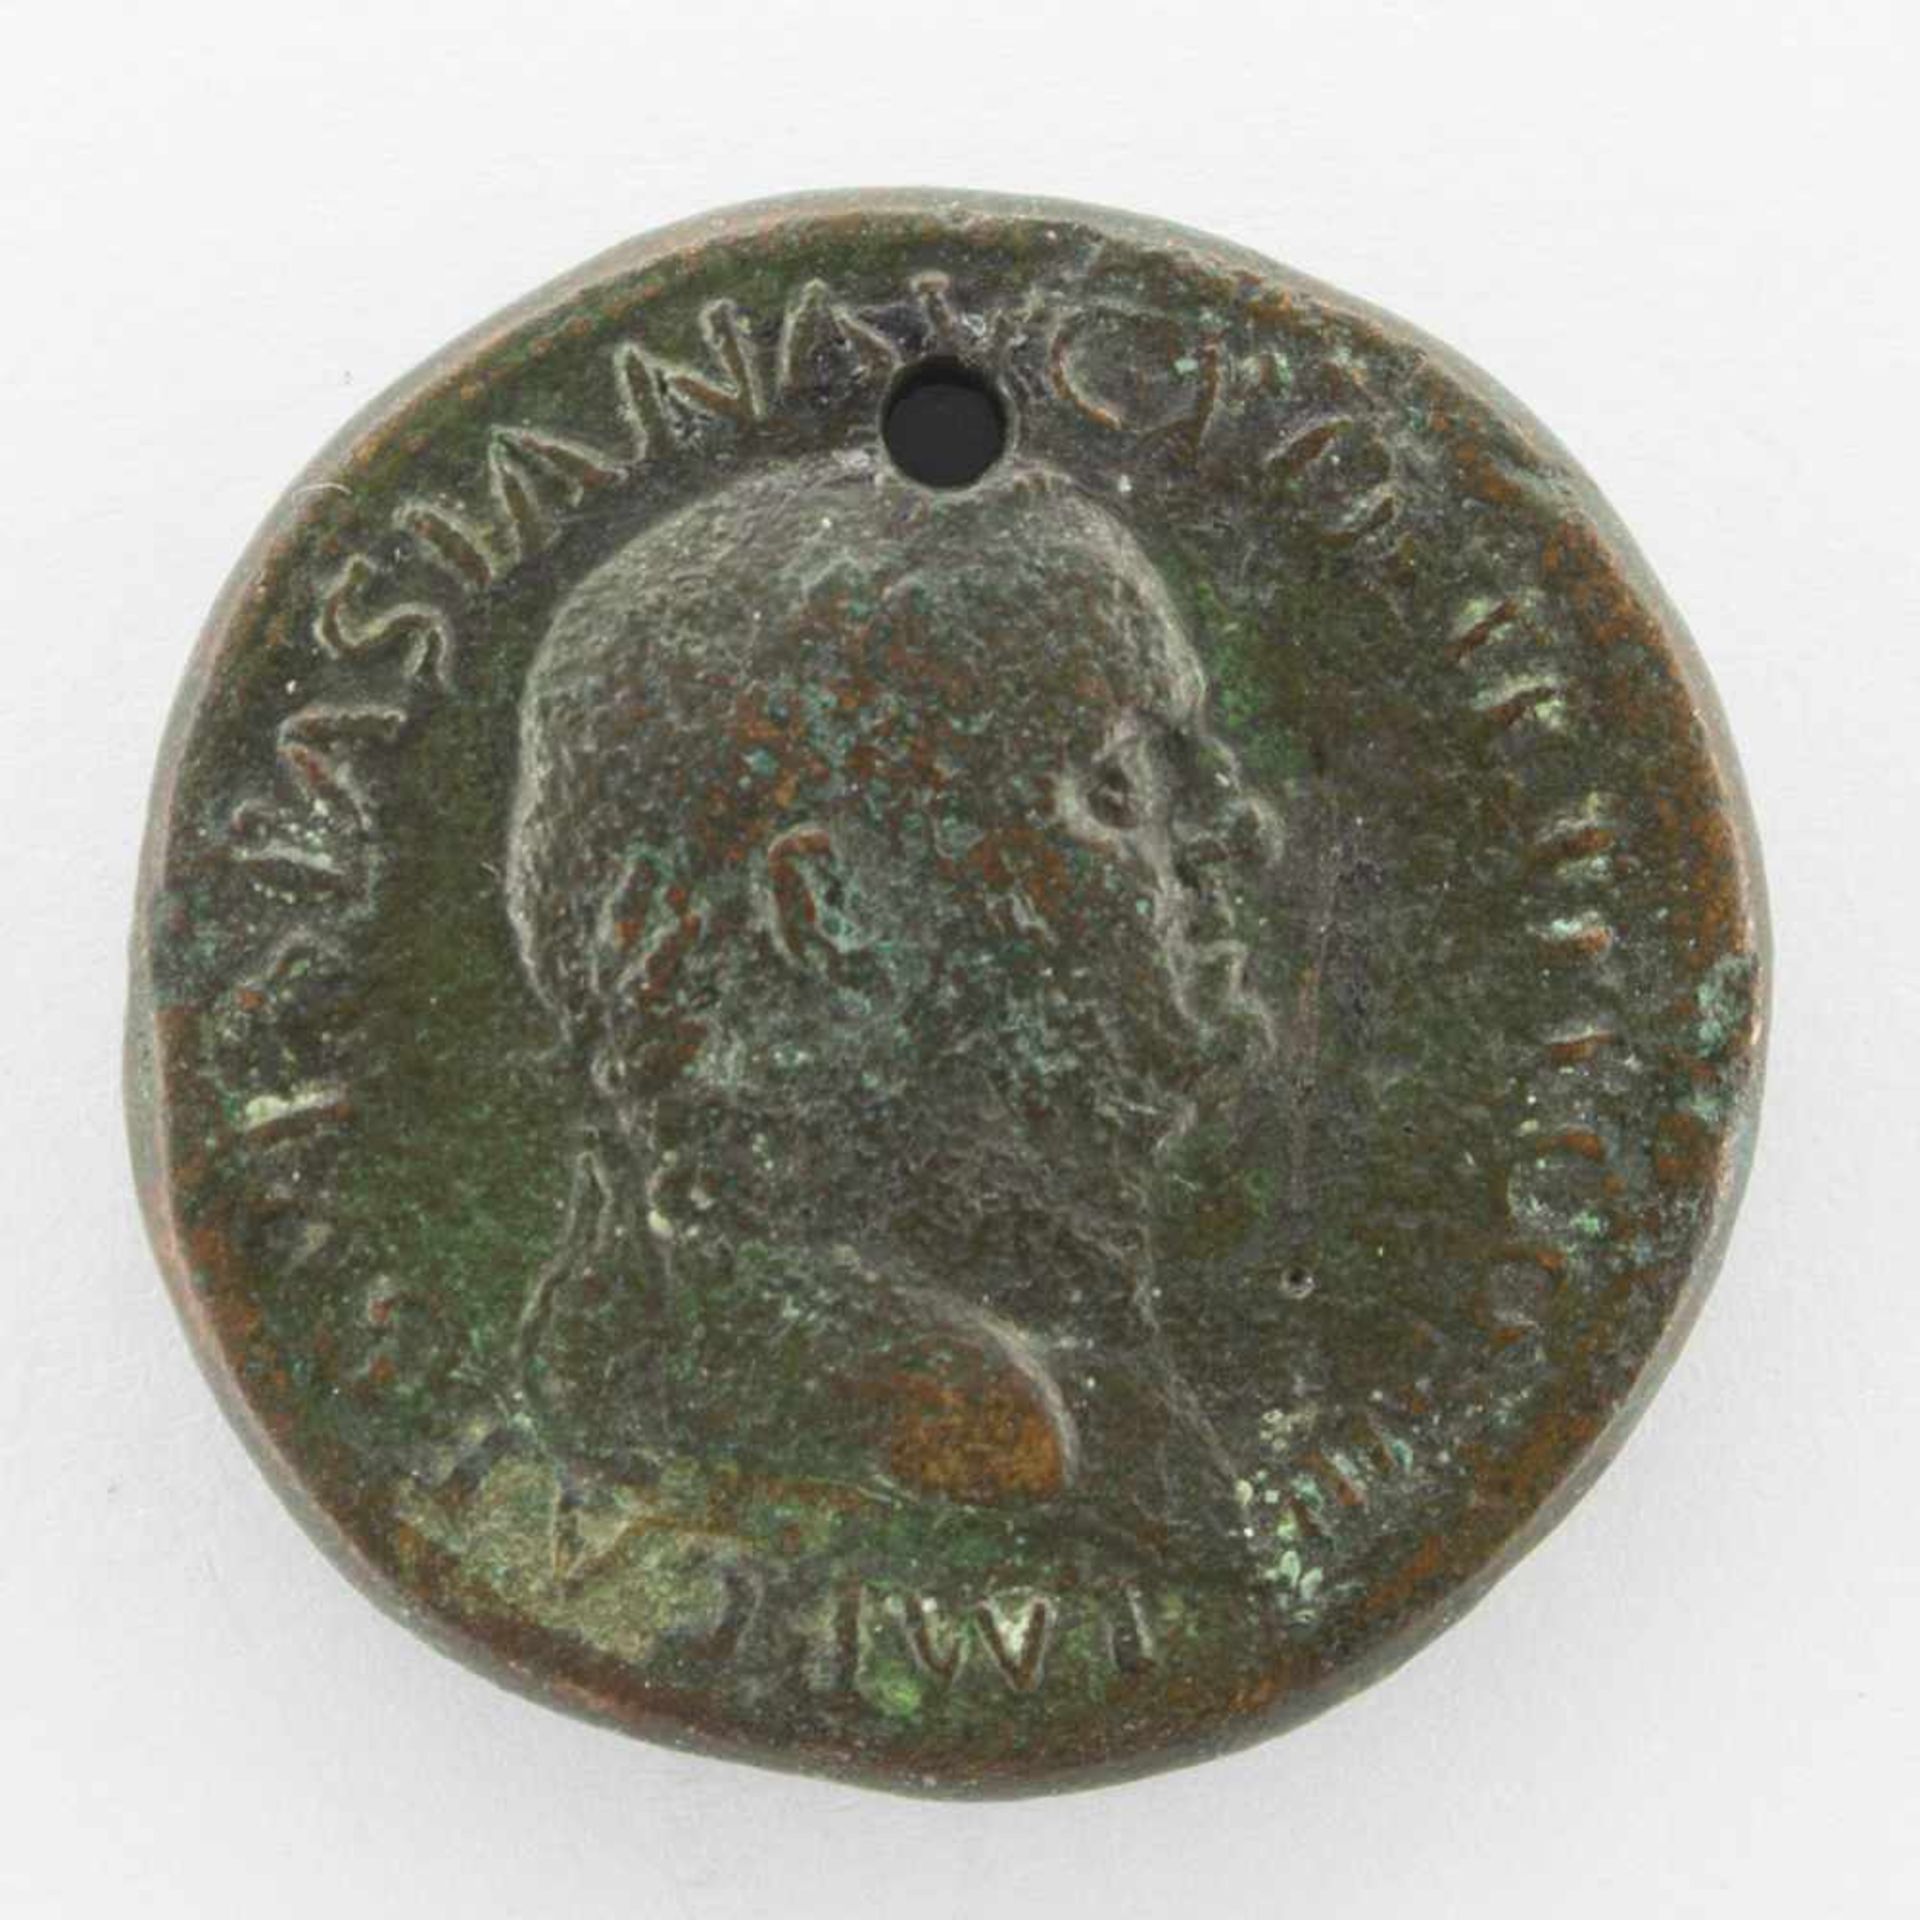 SesterzRömisches Kaiserreich 69-79 n. Chr., Kaiser Vespasian, Büste m. Lorbeerkranz/ Roma, antik